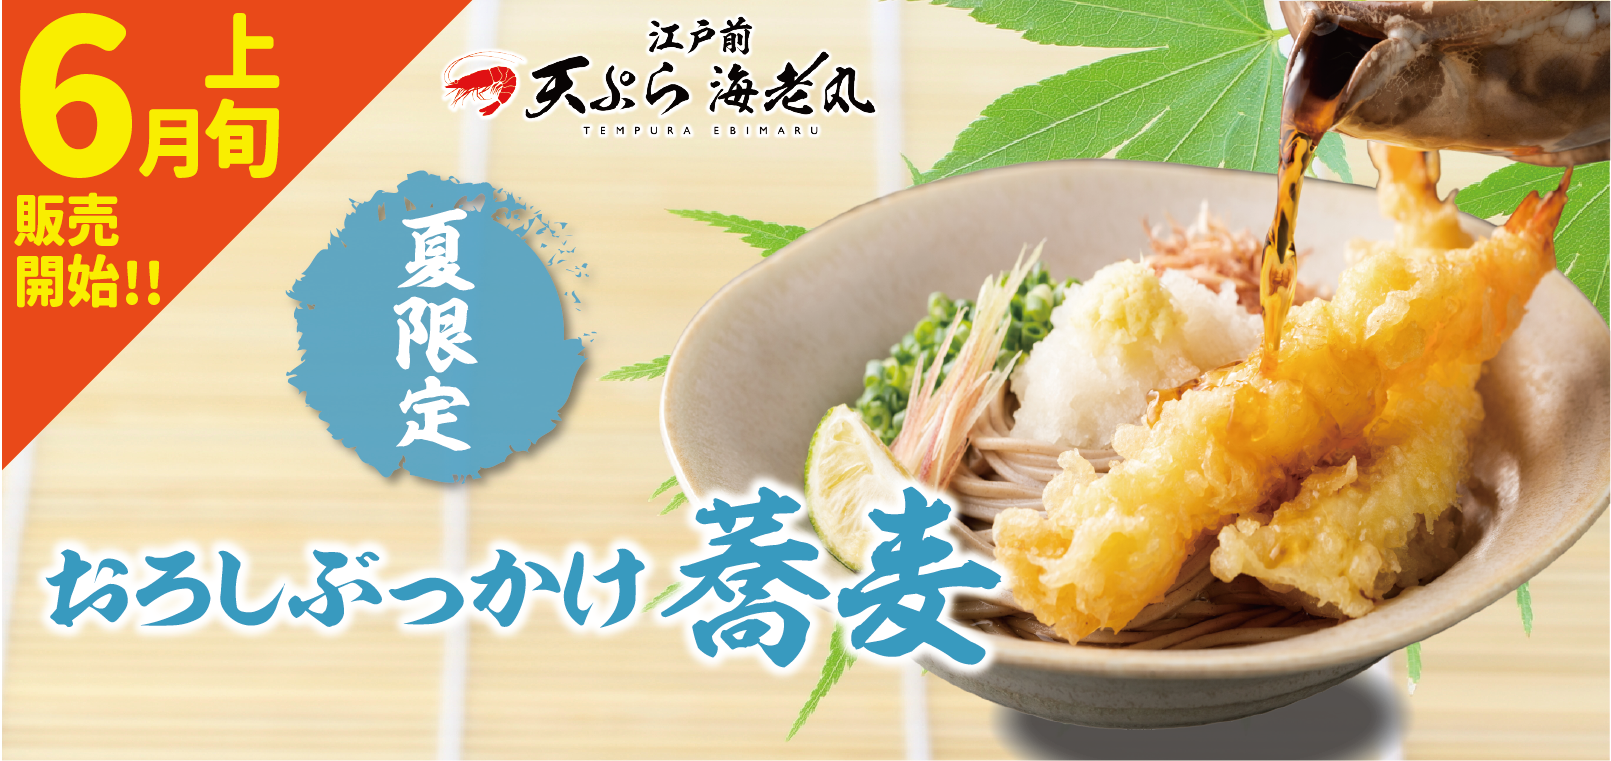 6月上旬より江戸前天ぷら海老丸から新商品のご案内です